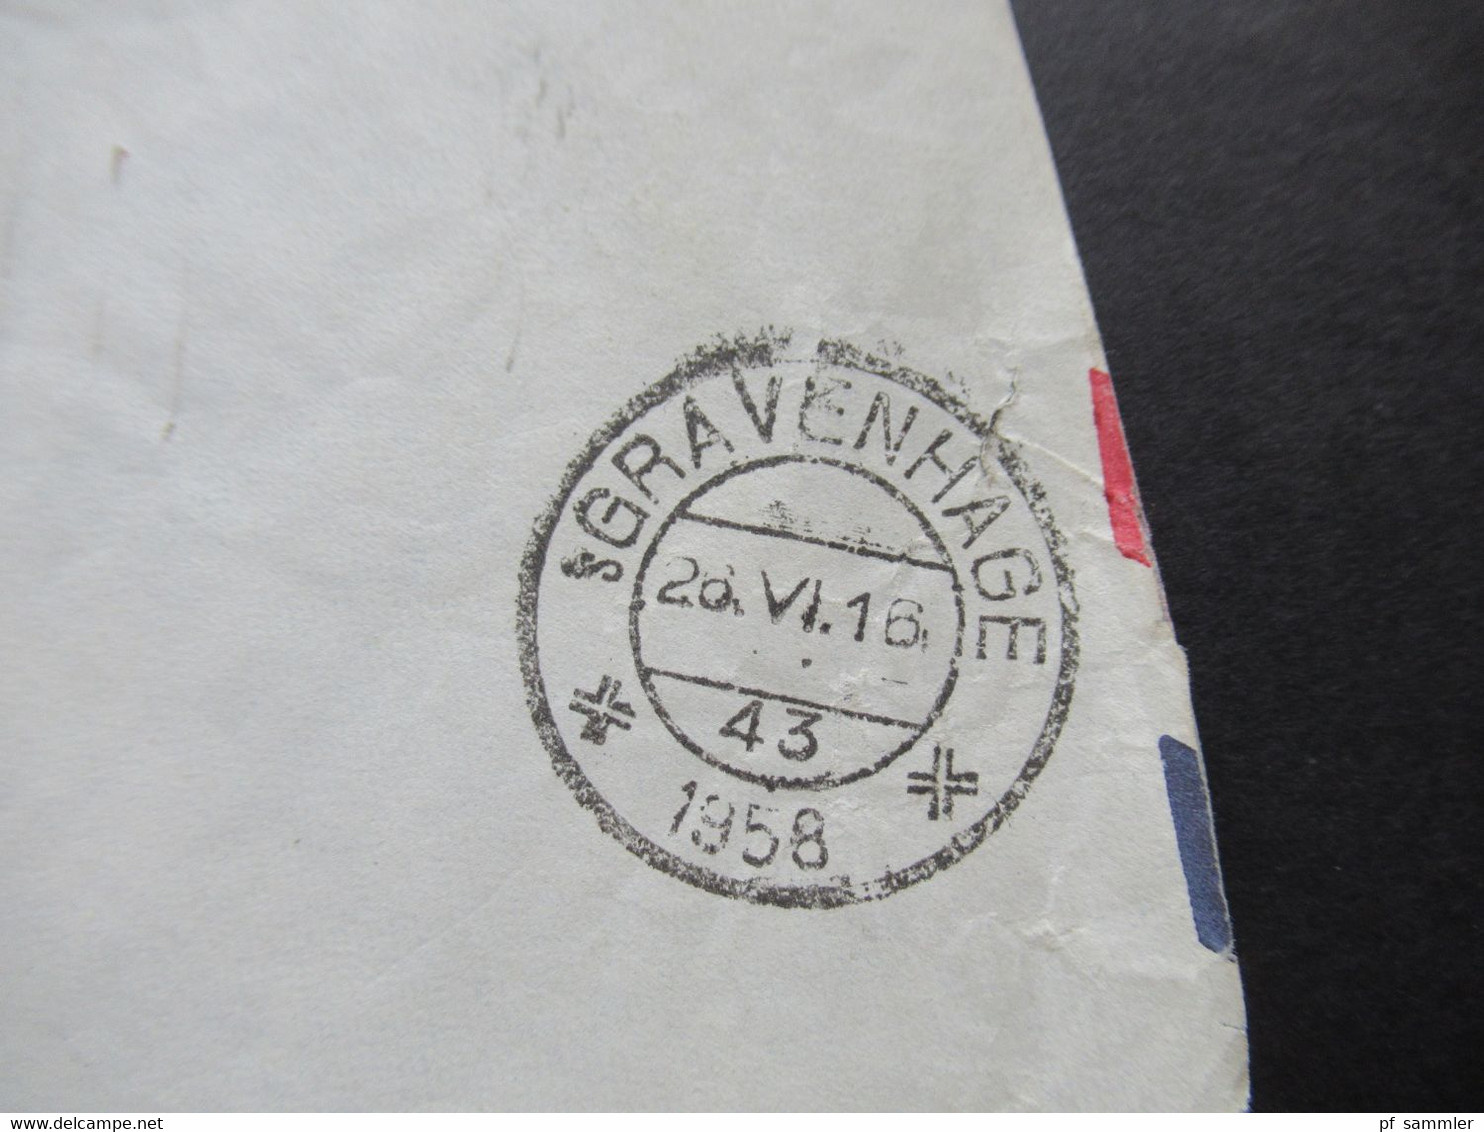 Niederlande 1958 Air Mail Aus Washington Netherlands Embassy Ministerie Van Buitenlandse Zaken Dienstbrief Der Botschaft - Cartas & Documentos